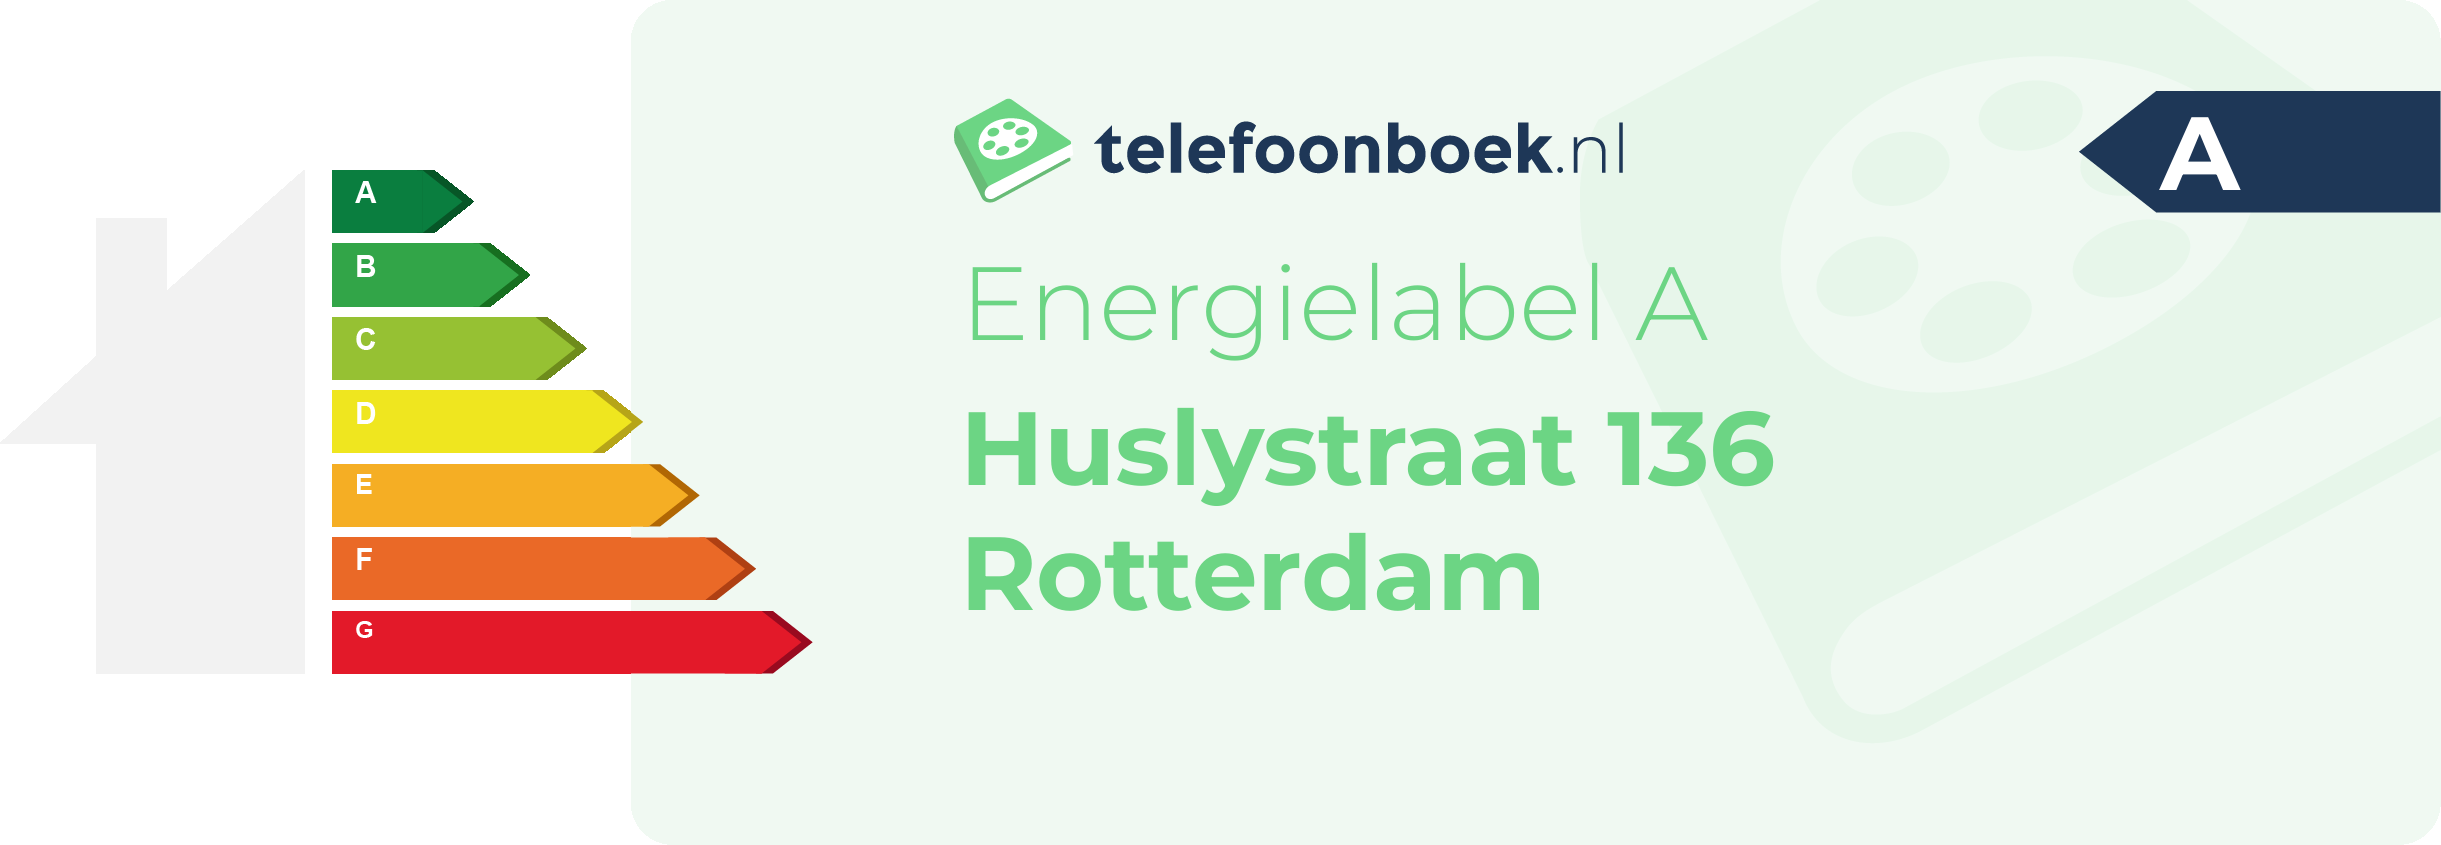 Energielabel Huslystraat 136 Rotterdam